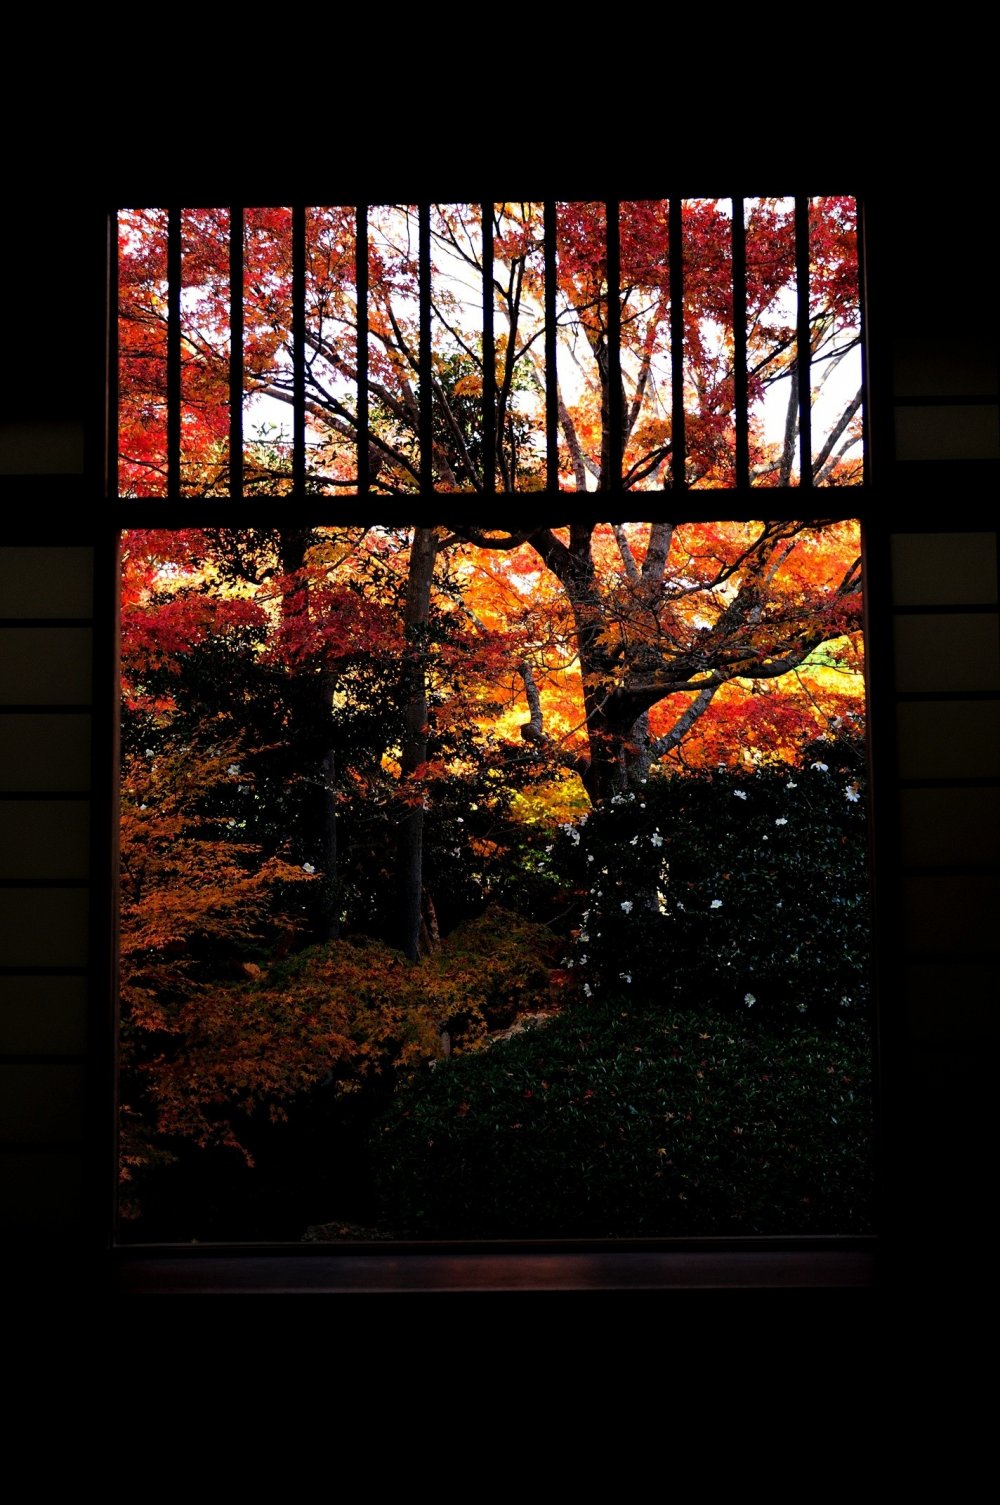 Saya bermeditasi di &#39;Window of Mayoi (Pikiran Bermasalah)&#39; dalam keadaan seperti Zen